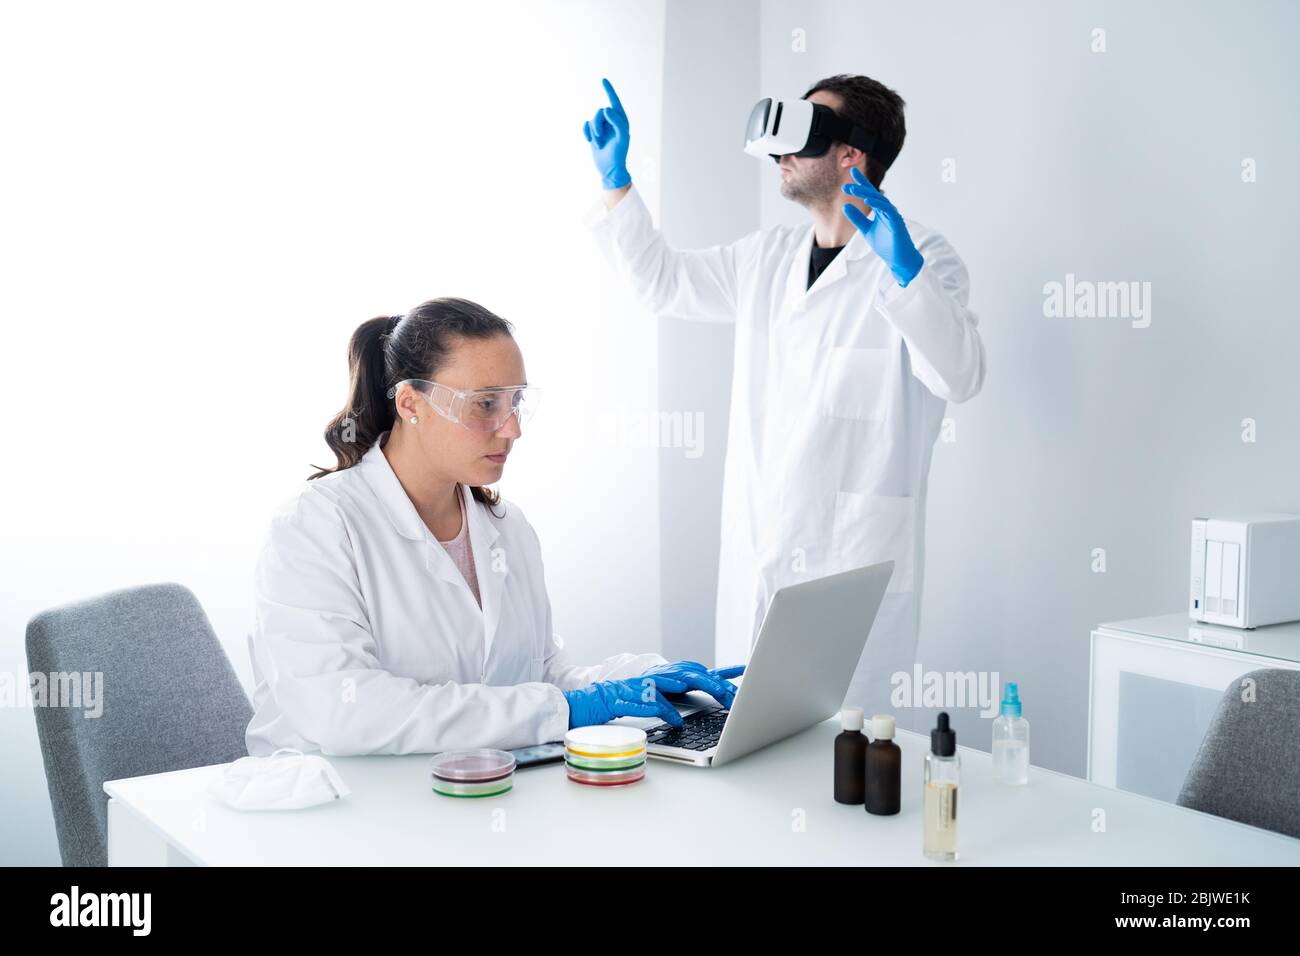 Giovani scienziati o ricercatori che lavorano nel moderno laboratorio di scienze biologiche. Donna lavora con campioni in un piatto di Petri e l'uomo è indossato Foto Stock